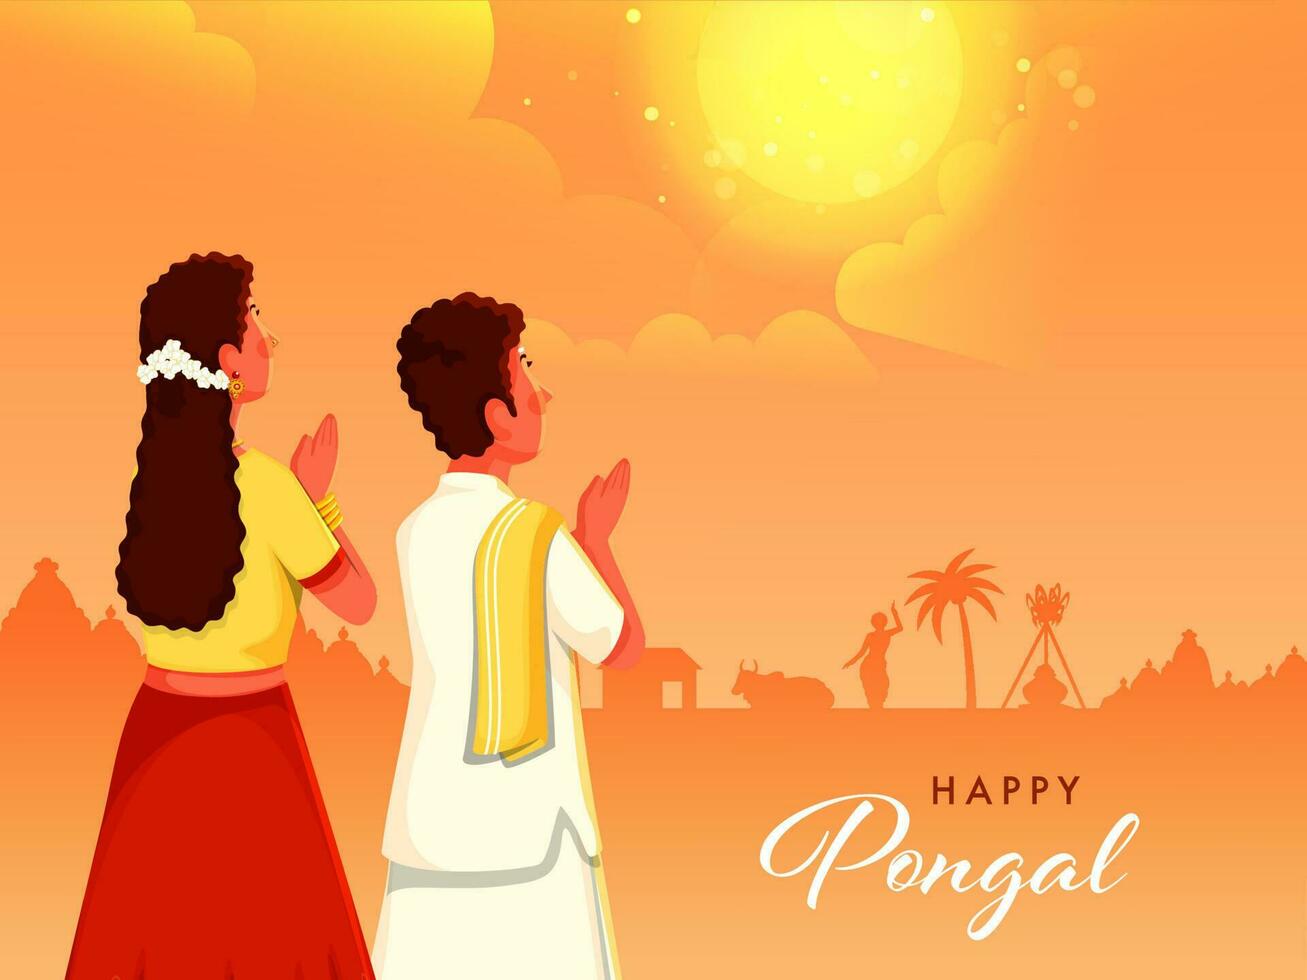 Süd indisch Paar tun Sonne Gott Anbetung auf Orange Hintergrund zum glücklich pongal Feier Konzept. vektor